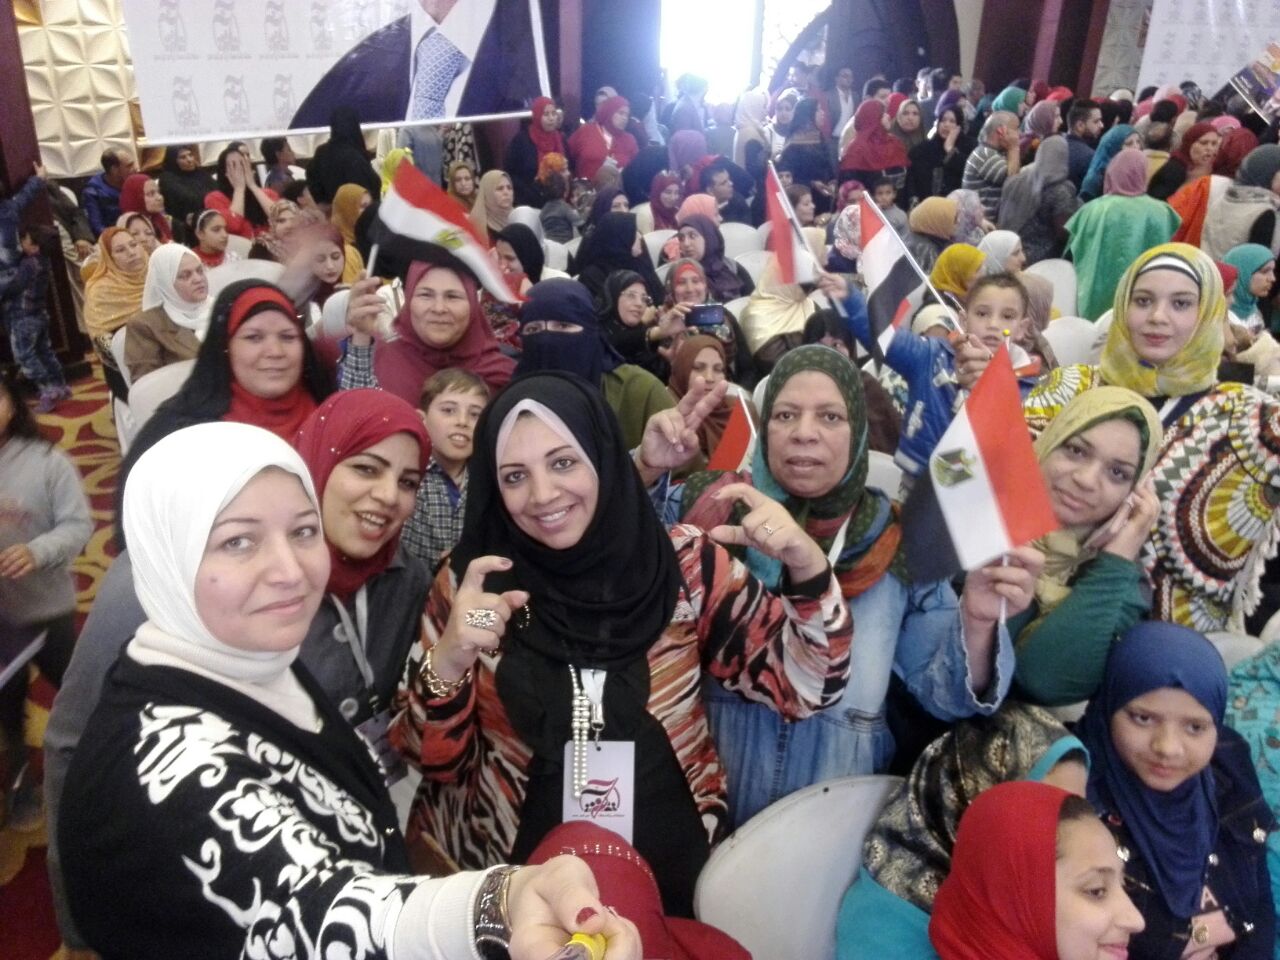 نساء الزقازيق يحتشدن بالمؤتمر الجماهيري لتأييد السيسي في الانتخابات (4)